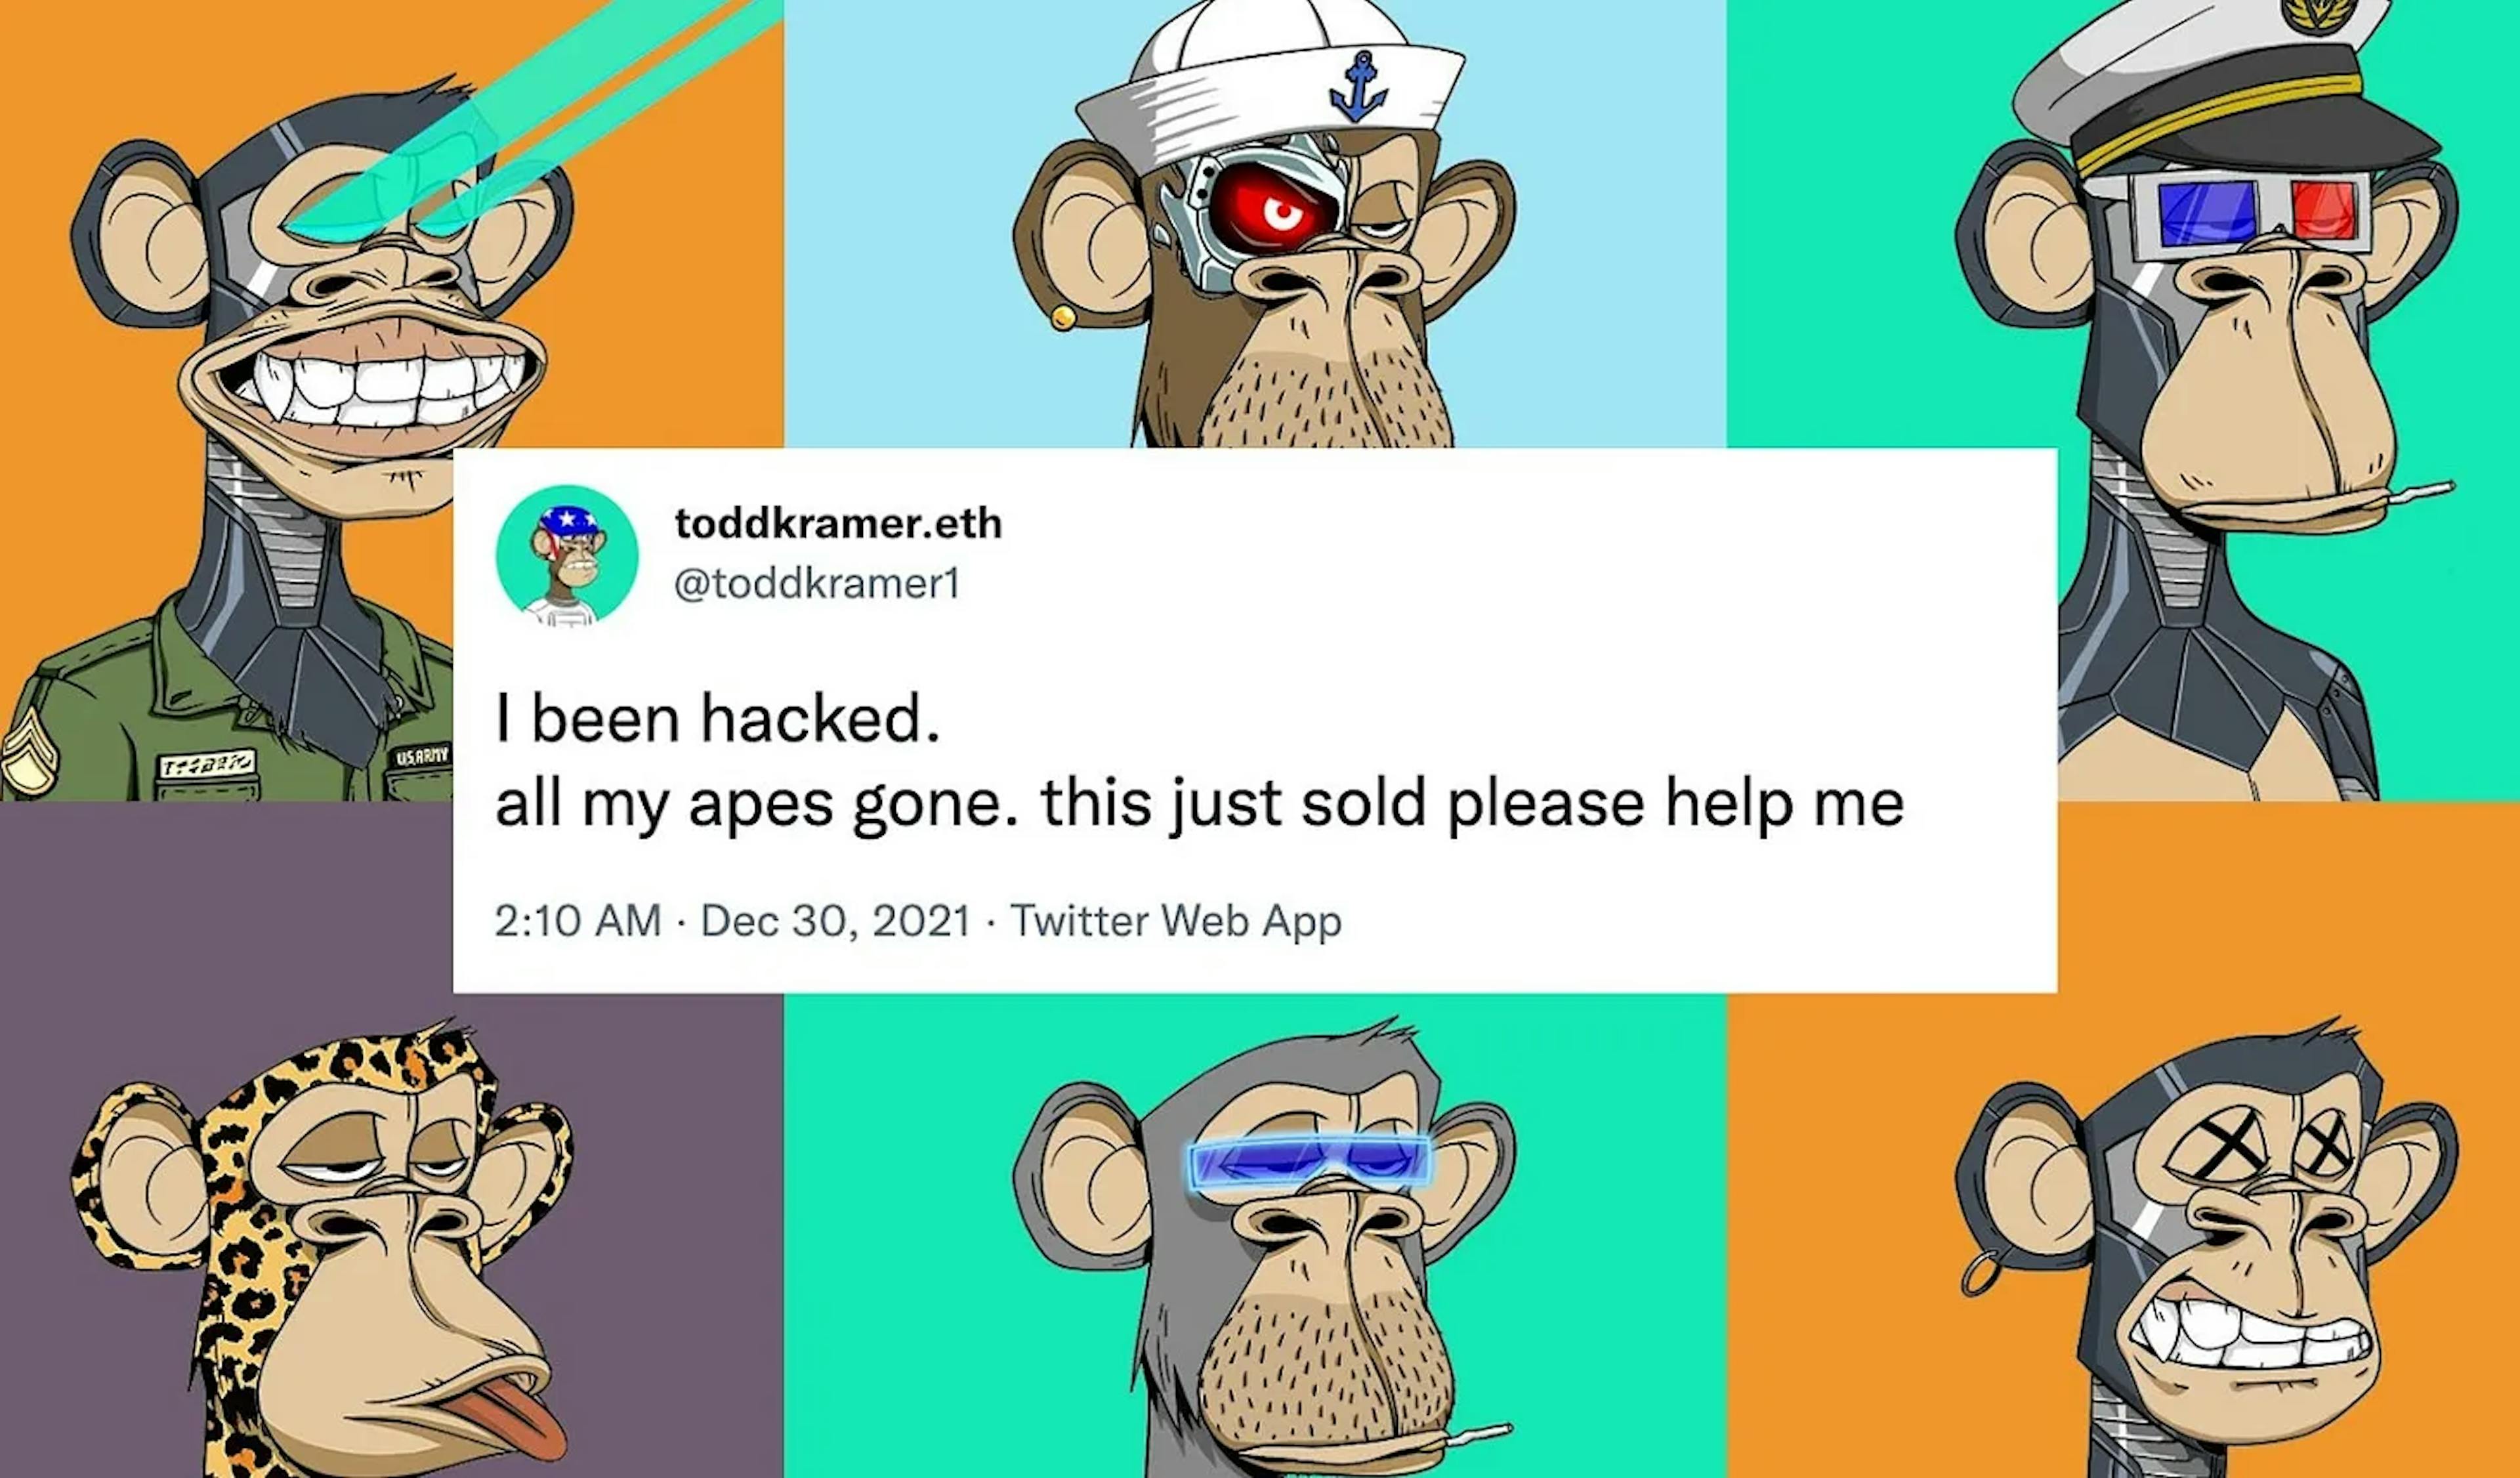 El grito se escuchó alrededor de criptografía: "Todos mis simios se fueron" - imagen a través del anuncio de delegate.cash de foobar